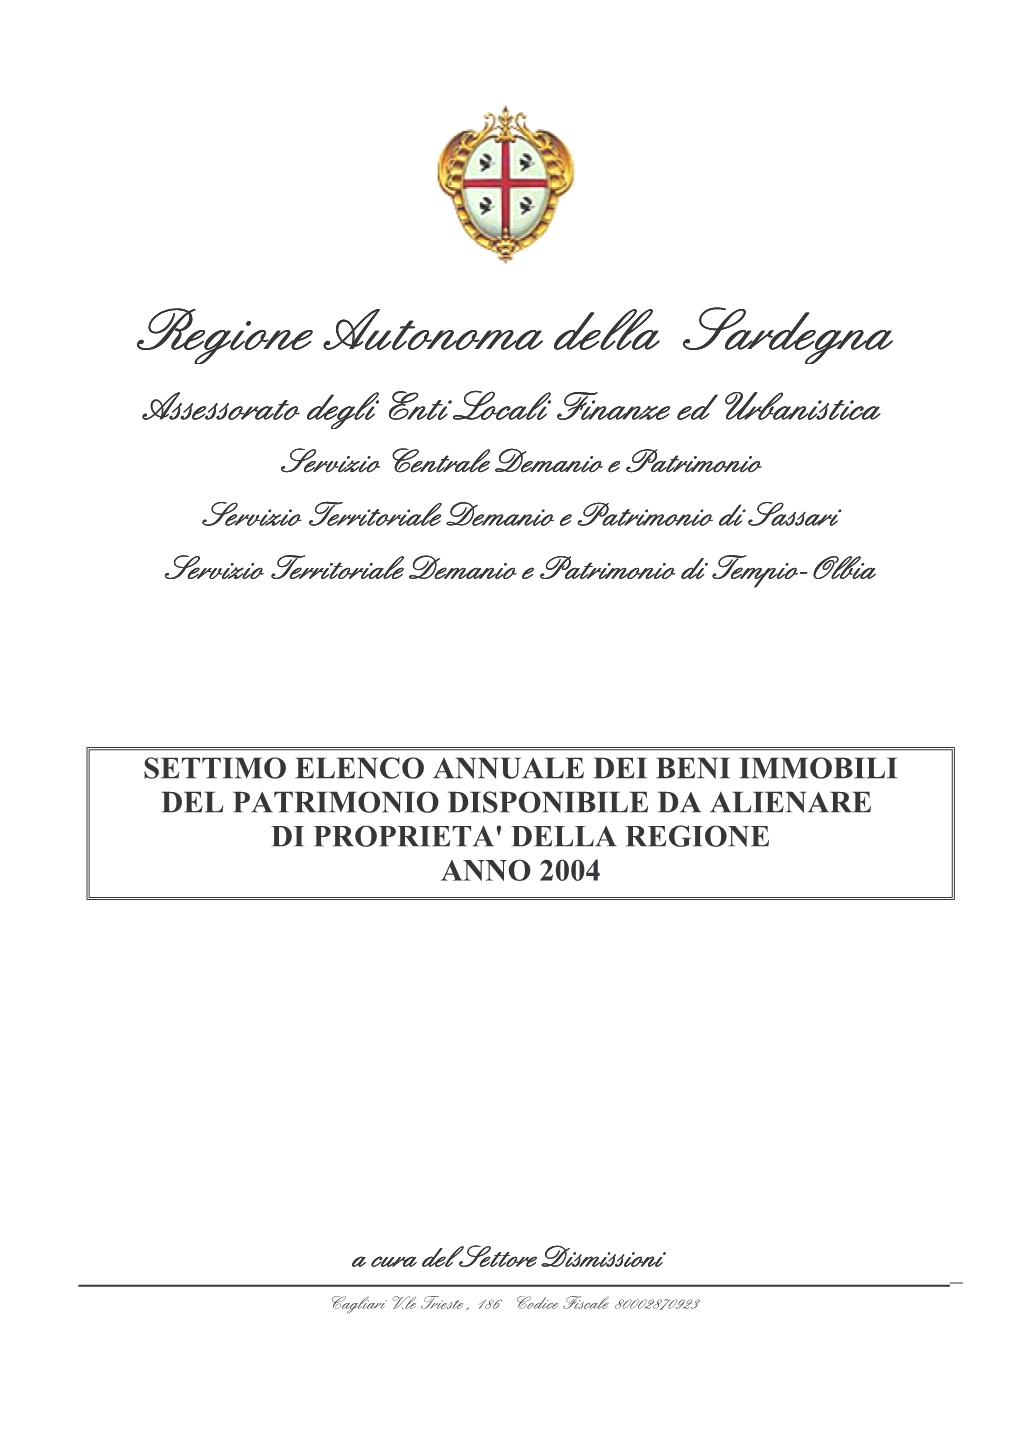 Settimo Elenco Annuale Dei Beni Immobili Del Patrimonio Disponibile Da Alienare Di Proprieta' Della Regione Anno 2004